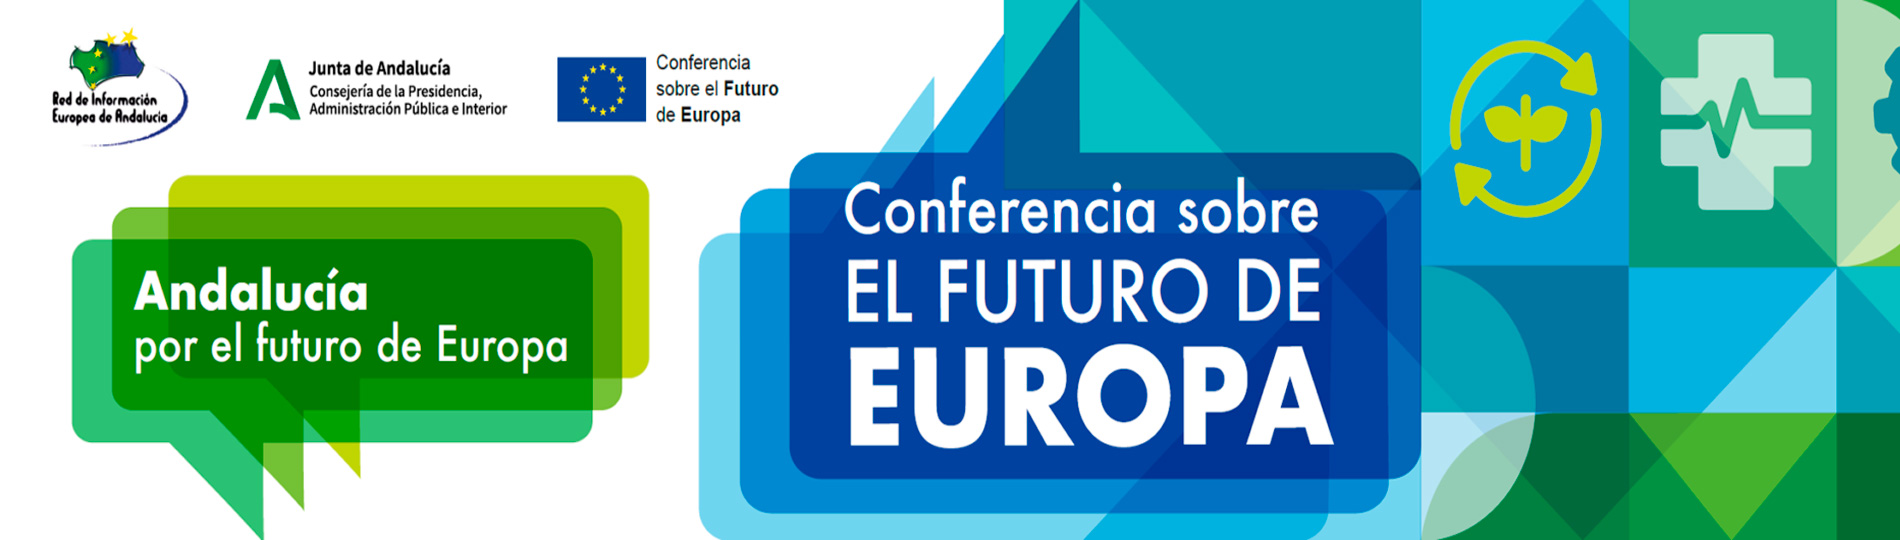 Conferencia sobre el Futuro de Europa desde el punto de vista de las empresas andaluzas